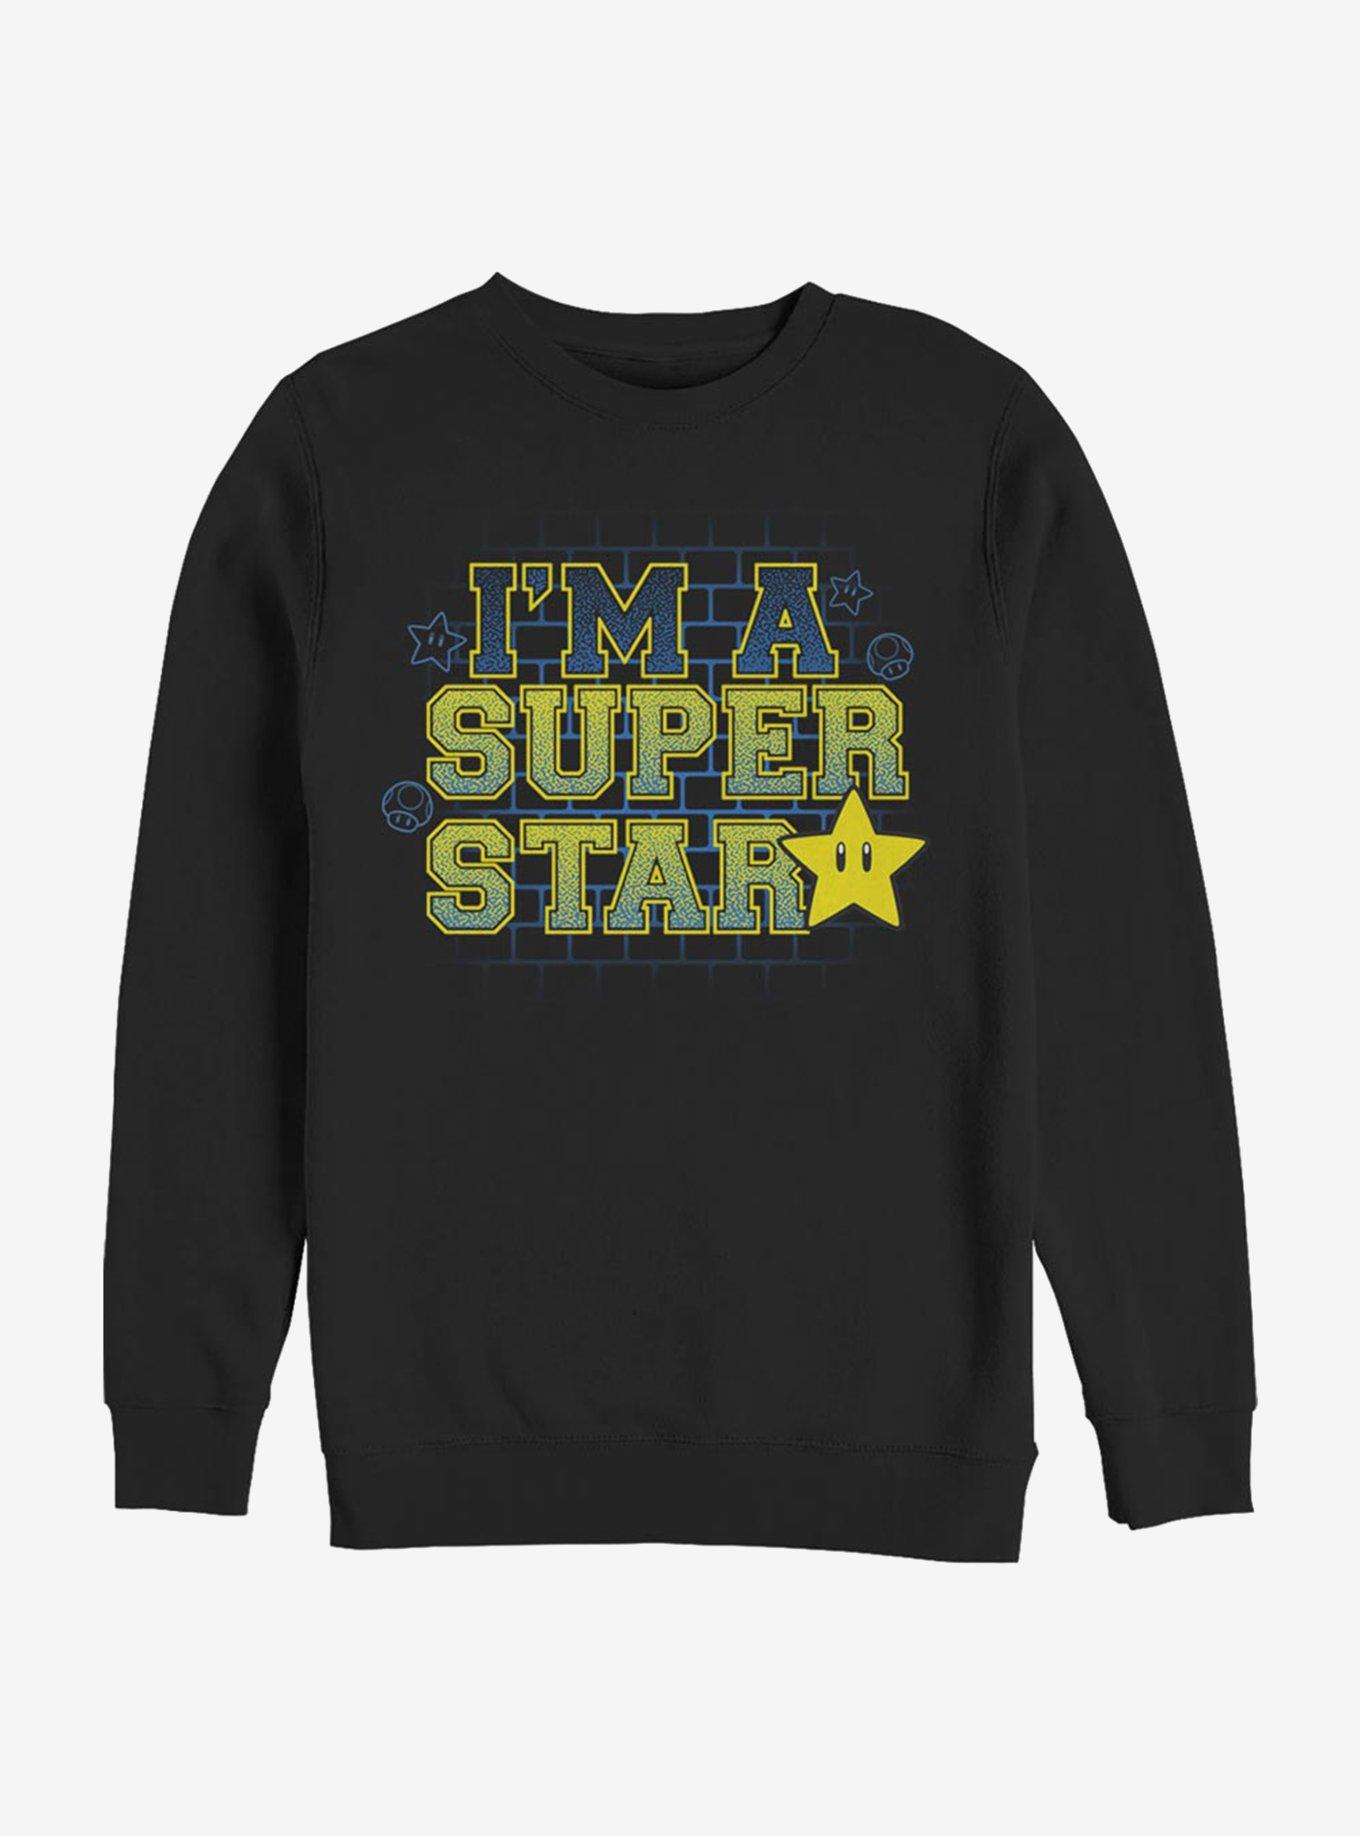 Super Mario Super Star Crew Sweatshirt, BLACK, hi-res